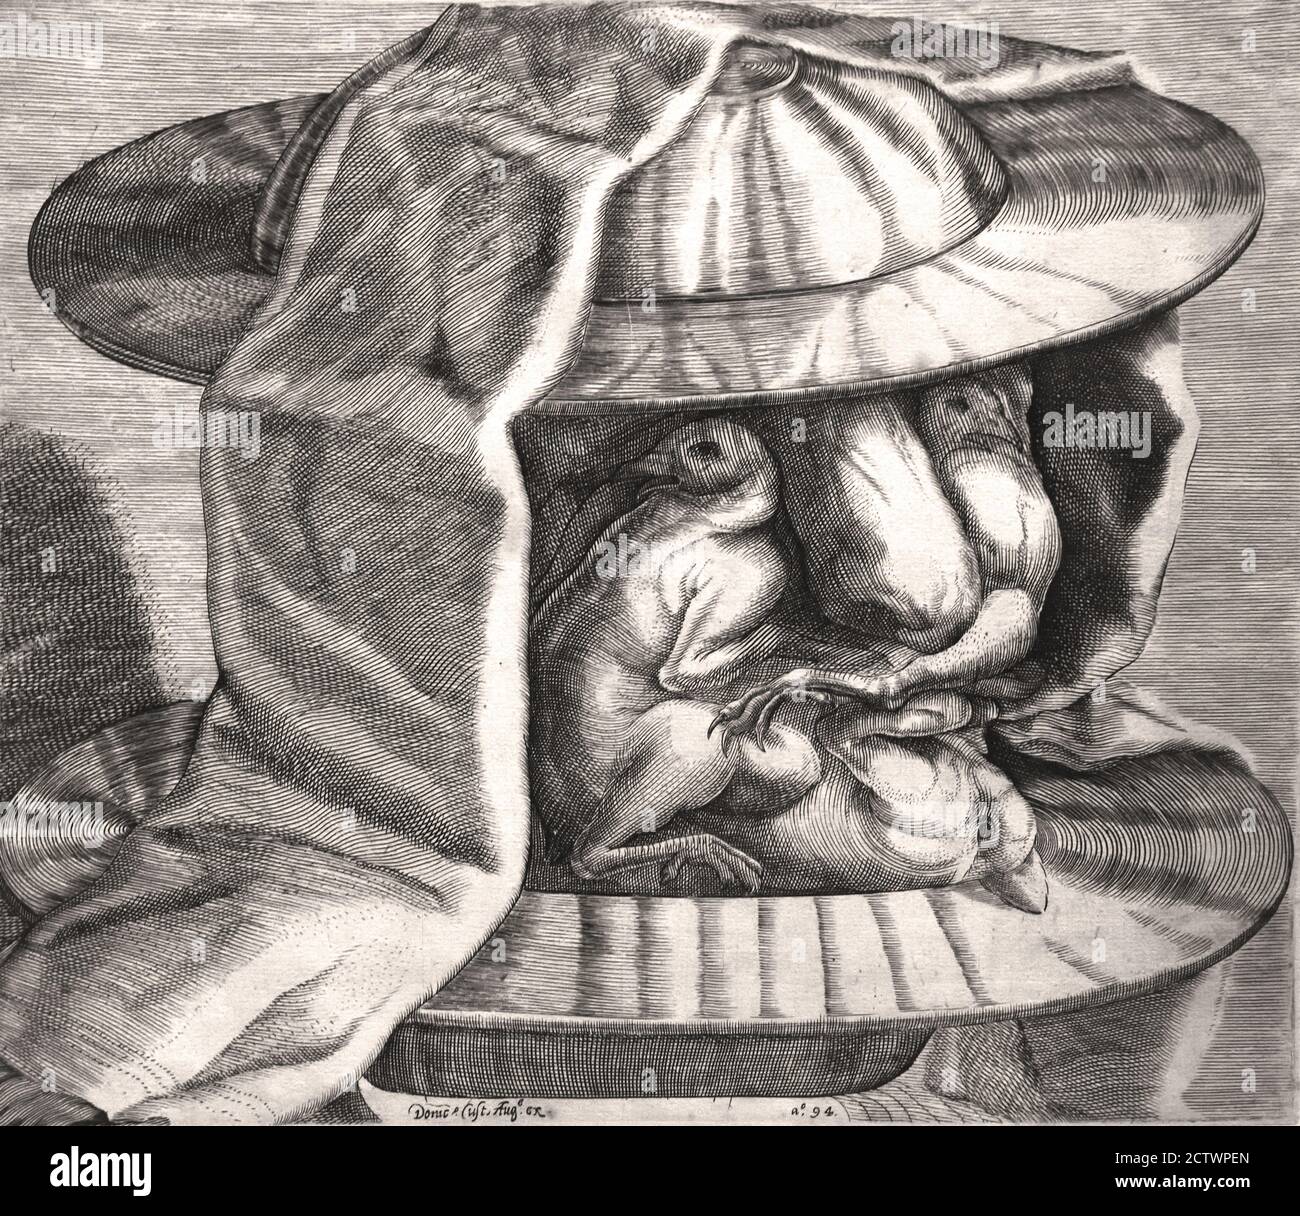 Ein grotesker Kopf mit Helm im Stil von Arcimboldo, von Dominicus Custos, 1594 Niederlande, Niederländisch, ( das Gesicht besteht aus gebratenem Geflügel zwischen zwei Metallschalen. Zwei Hühnerköpfe dienen als Augen, während ein ausgestrecktes Bein einen Schnurrbart suggeriert. Die Komposition erinnert stark an Gemälde von Giuseppe Arcimboldo (c. 1526-1593) ) Stockfoto